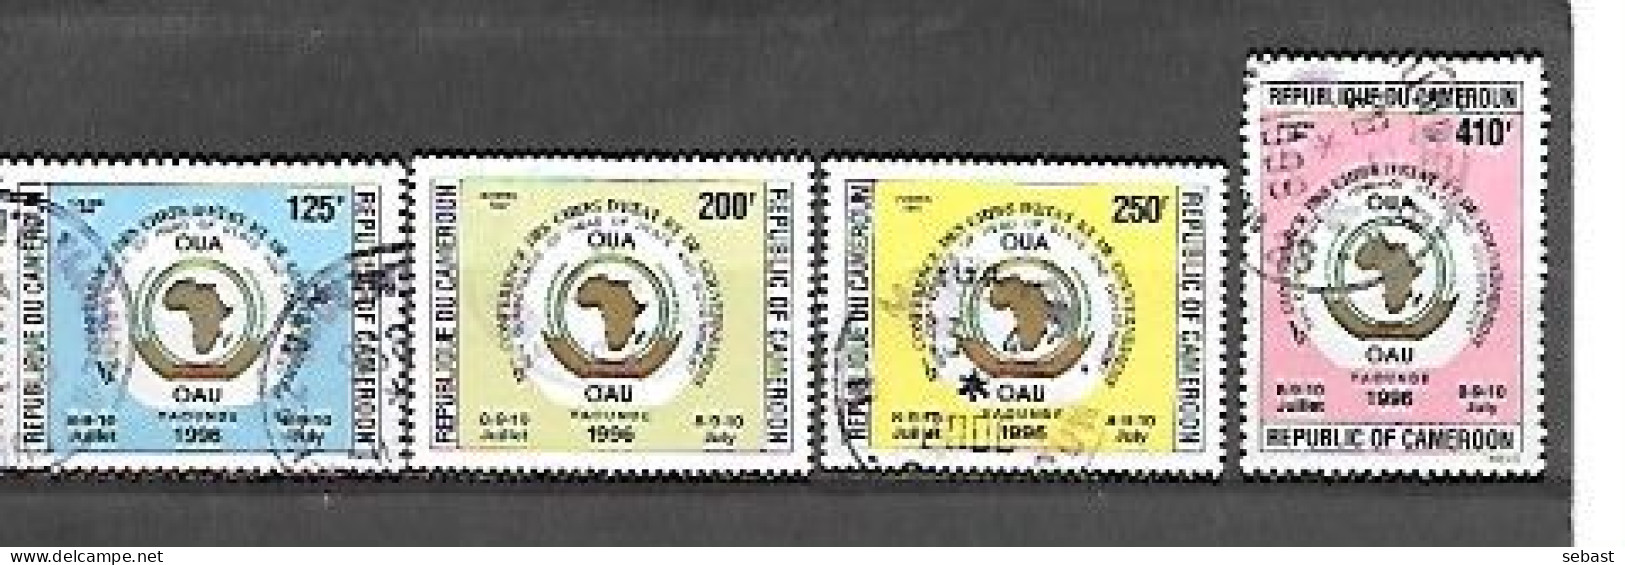 TIMBRE OBLITERE DU CAMEROUN DE 1996 N° MICHEL 1221/24 - Camerun (1960-...)